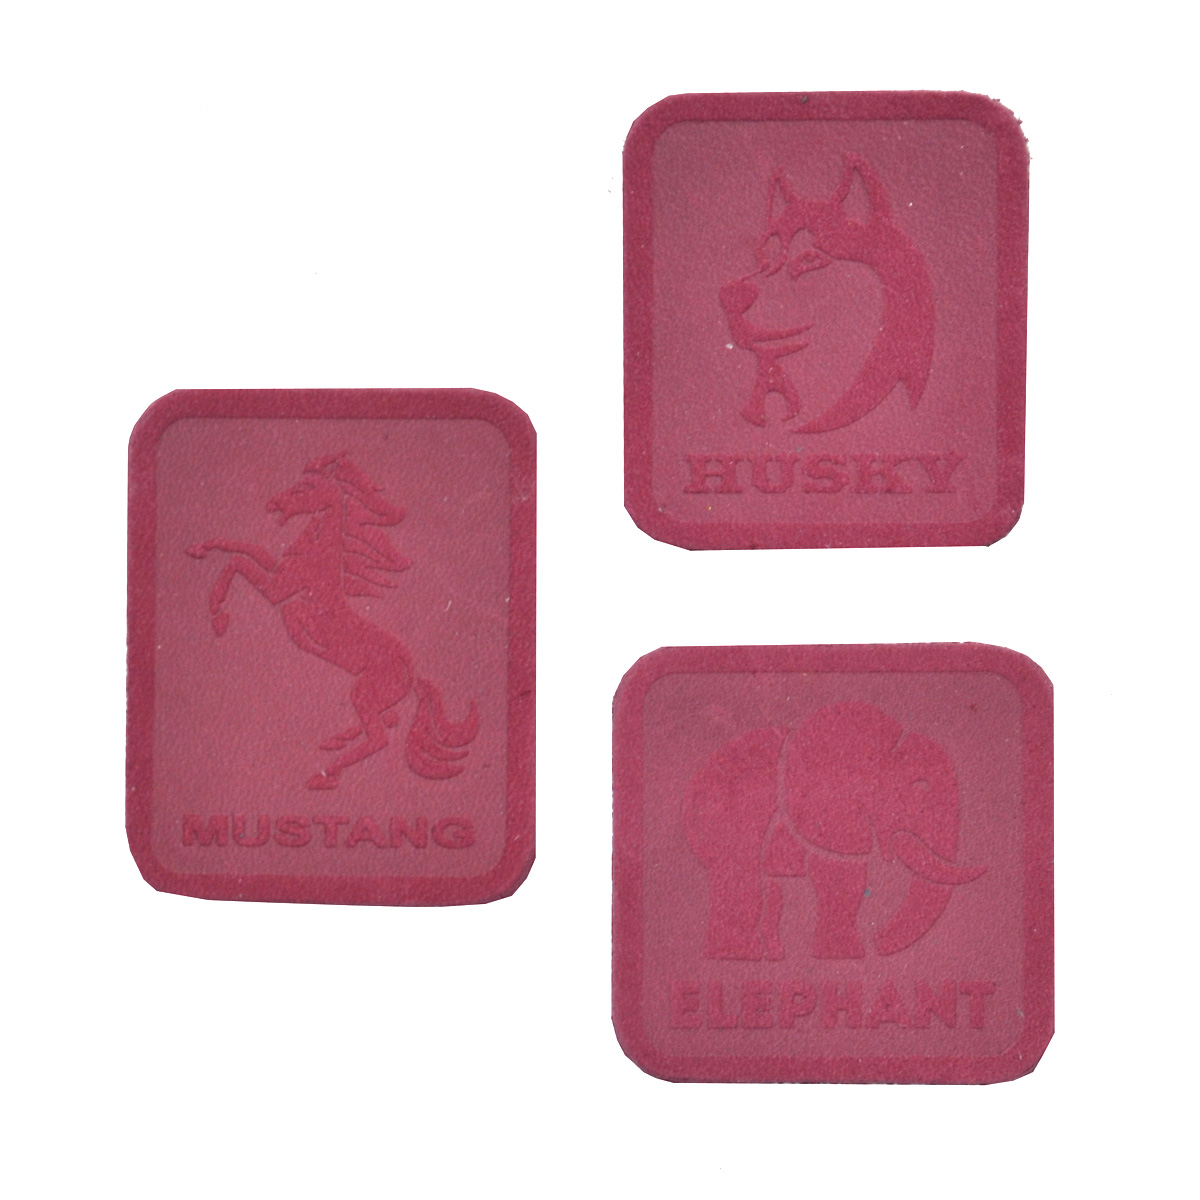 5006 Набор термоаппликаций из замши: Husky, Mustang, Elephant (59 бордовый), 3 шт